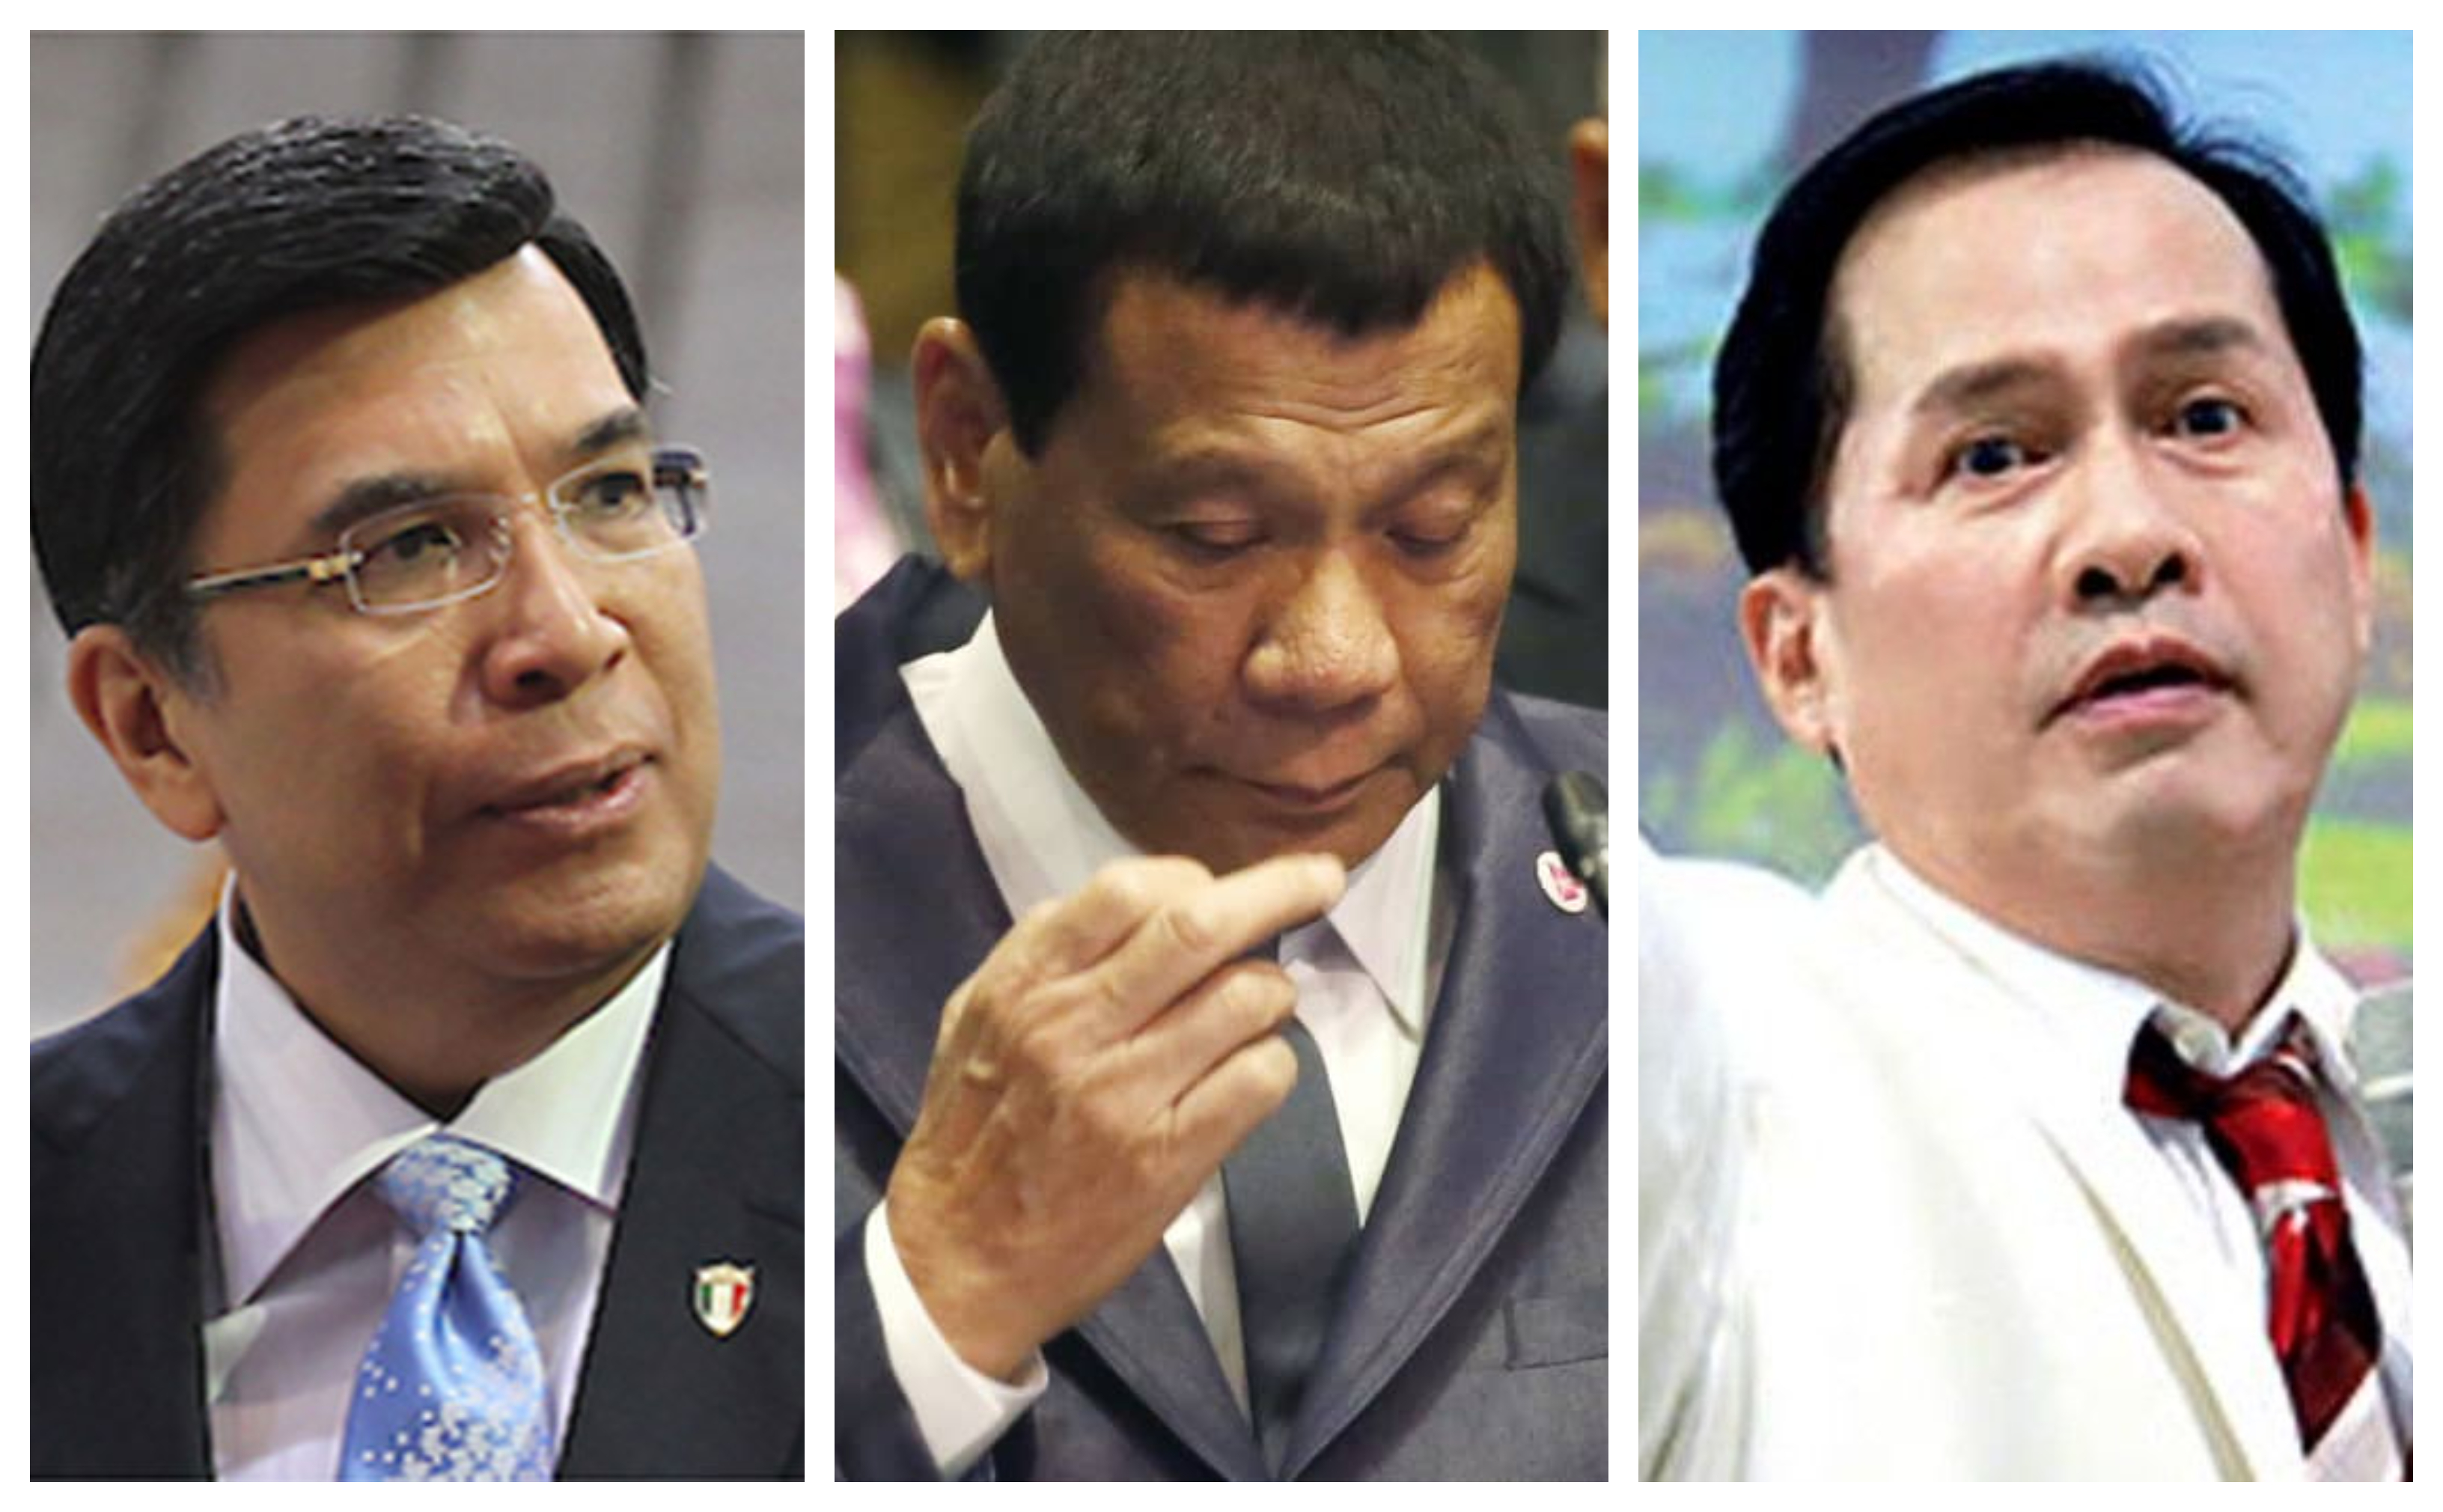 Eduardo Manalo, Rodrigo Duterte and Apollo Quiboloy montage